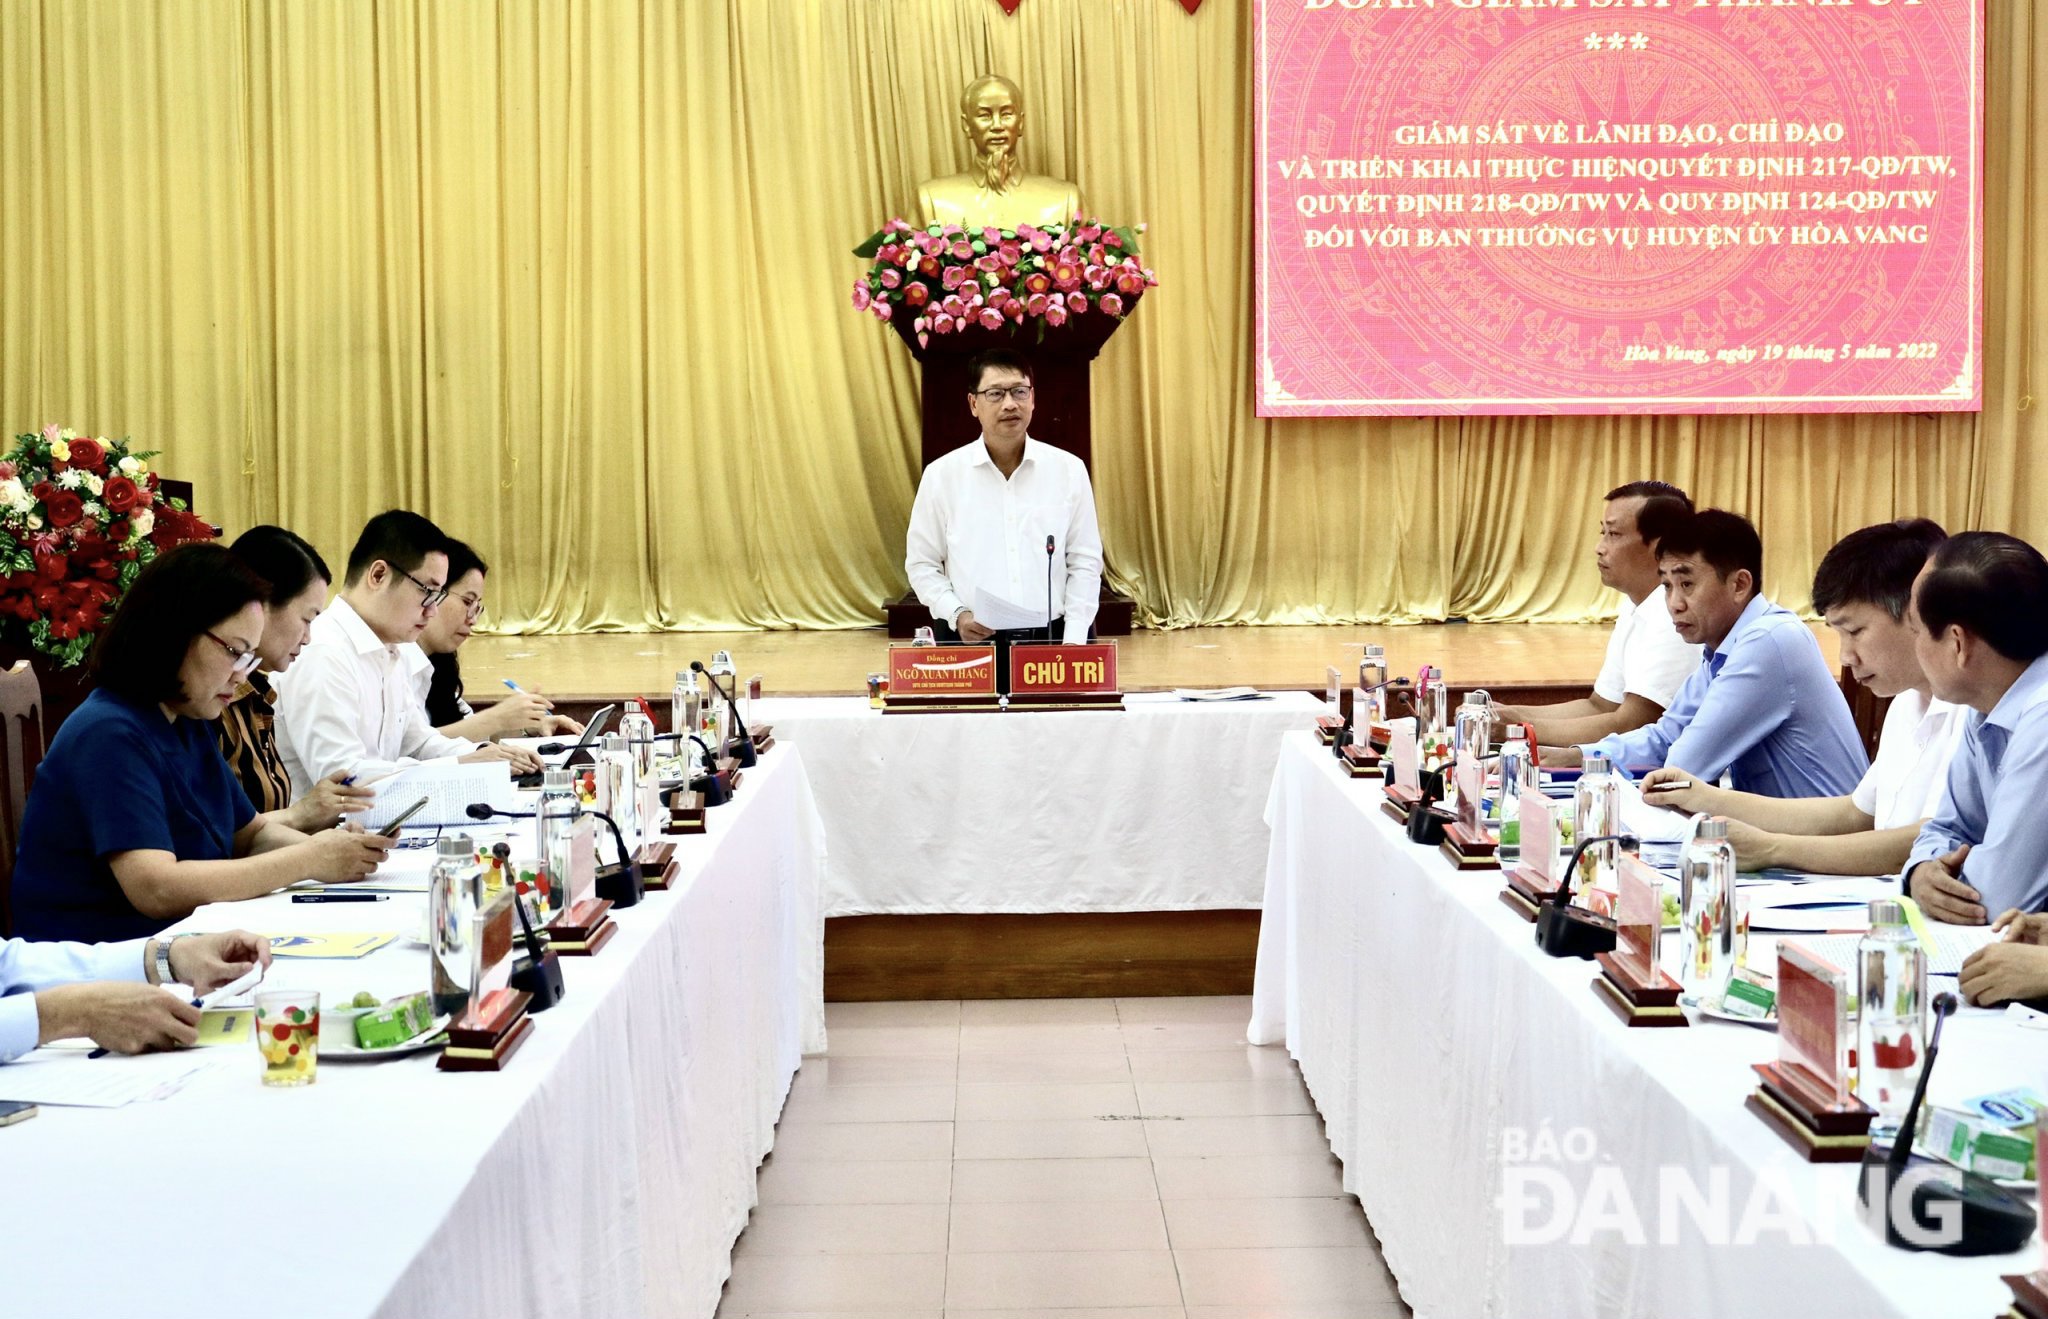 Chủ tịch Ủy ban MTTQ Việt Nam thành phố Ngô Xuân Thắng (giữa) chủ trì buổi giám sát. Ảnh: N.QUANG